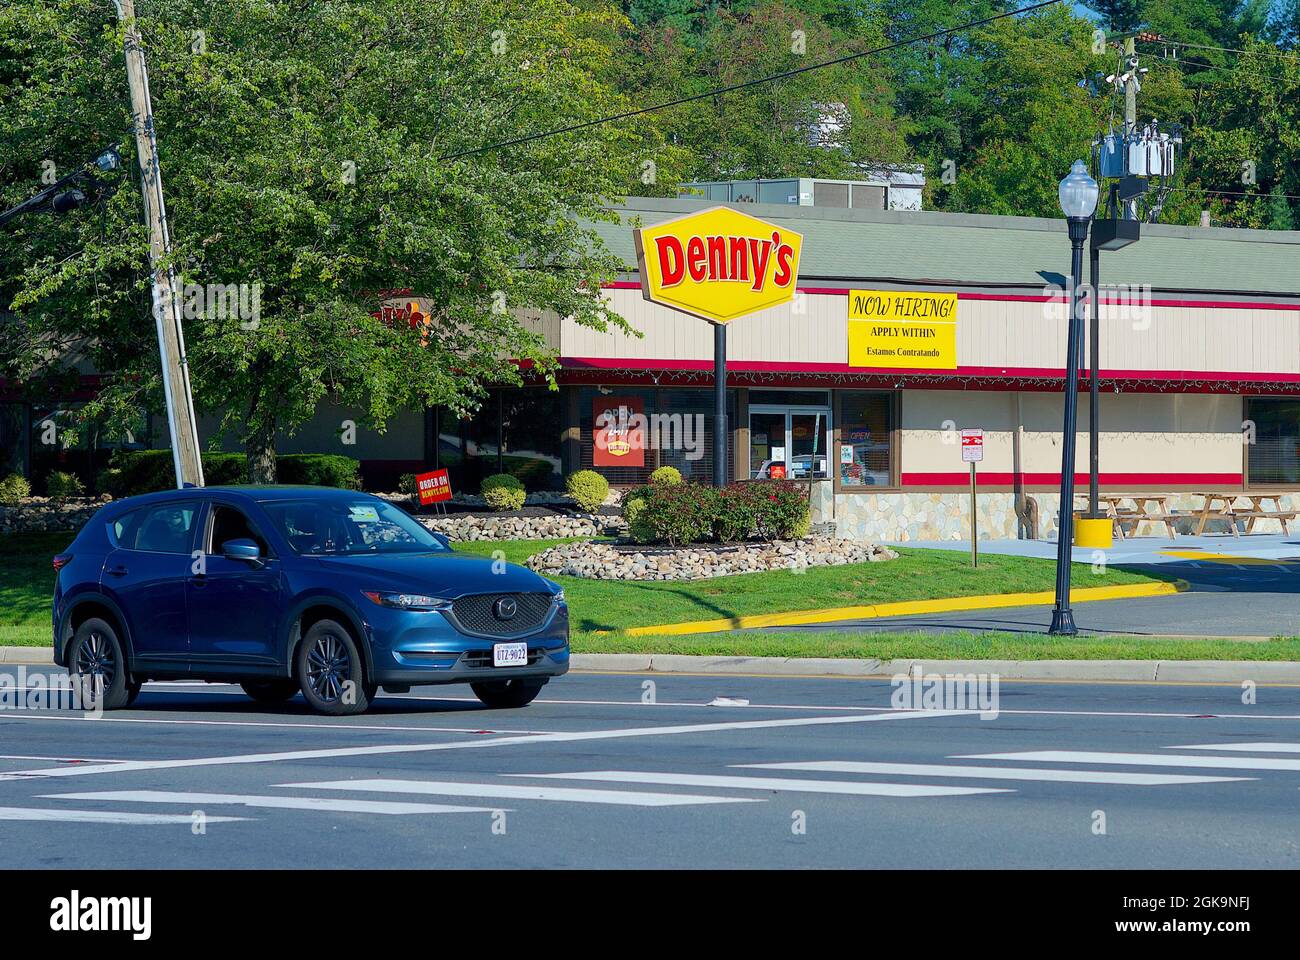 Fairfax, Virginia, Stati Uniti d'America - 3 settembre 2021: Un'auto passa un ristorante Denny's con un cartello "Now Hiring" in cerca di nuovi dipendenti per riempire le posizioni vacanti. Foto Stock